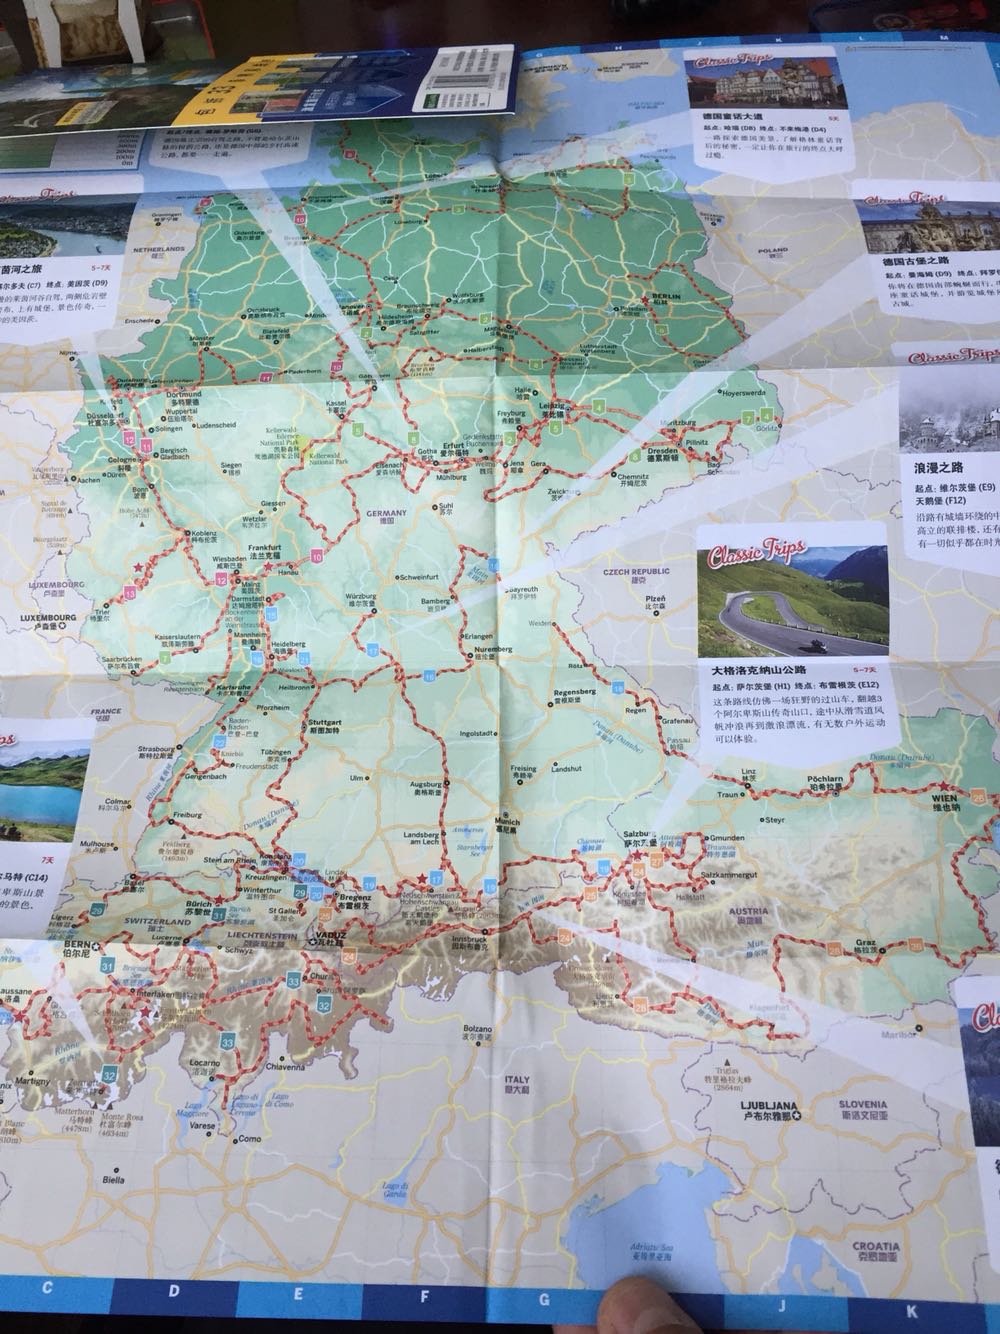 图文并茂 言之有物 非常好的自驾游路书 实用的地图 详细的指引及行家的建议 有助于你完成自己的完美的德奥自驾之旅